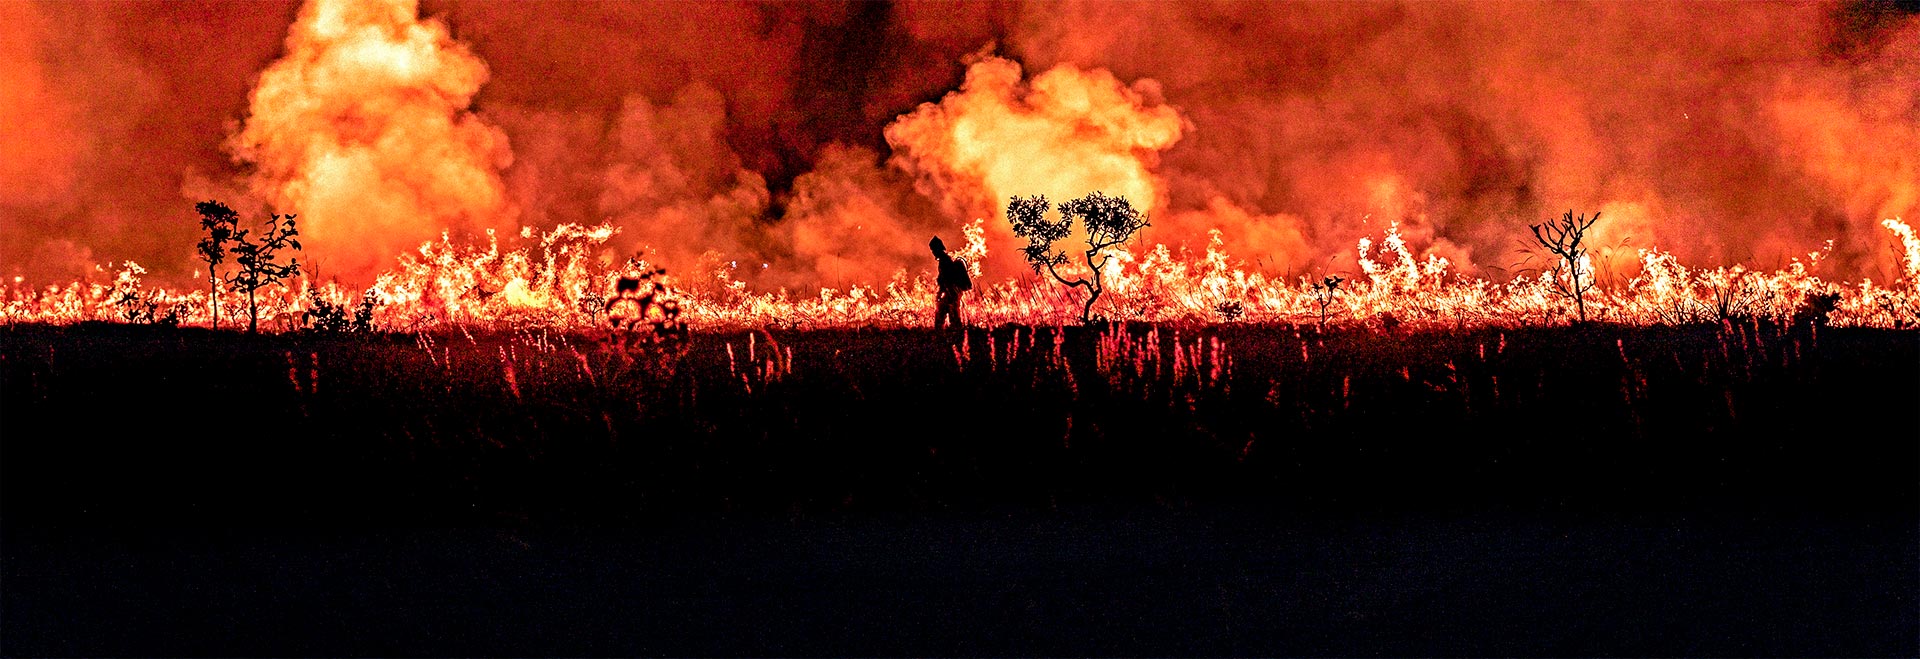 Agente do ICMBio durante manejo integrado do fogo, cujo objetivo é prevenir grandes queimadas, em Alto Paraíso de Goiás: mudanças climáticas tornam incêndios florestais cada vez mais frequentes